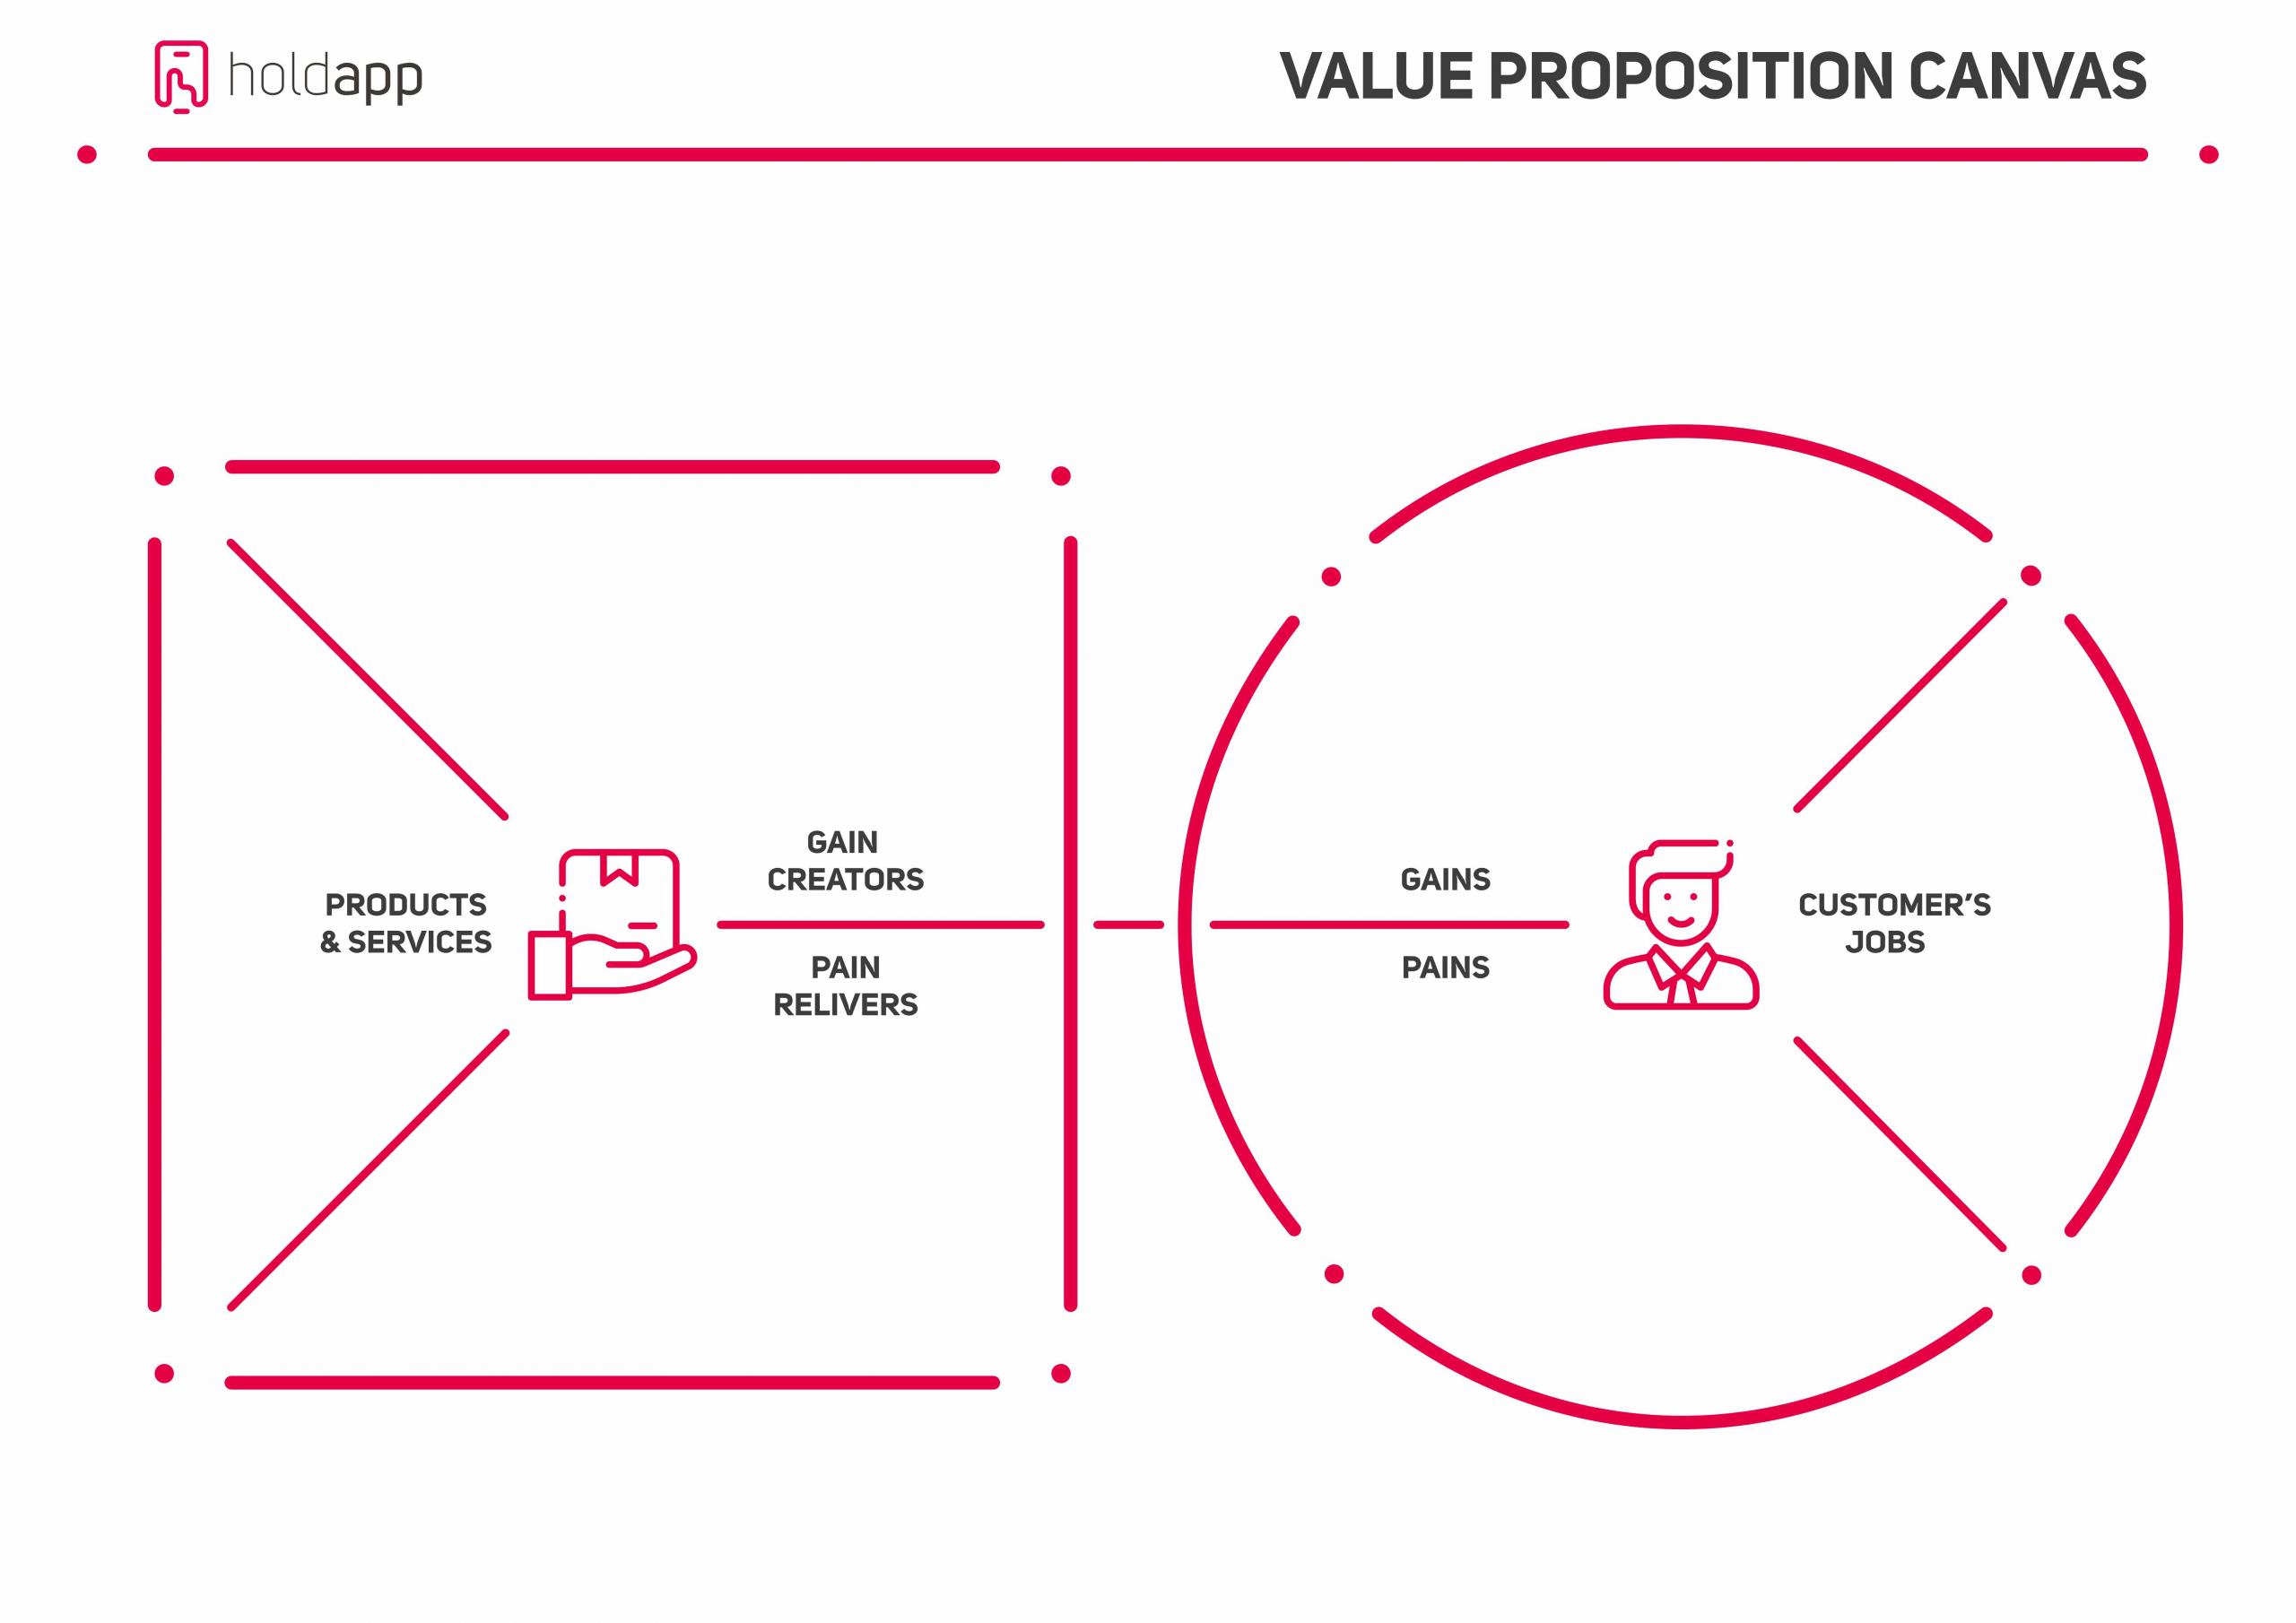 Value Proposition canvas